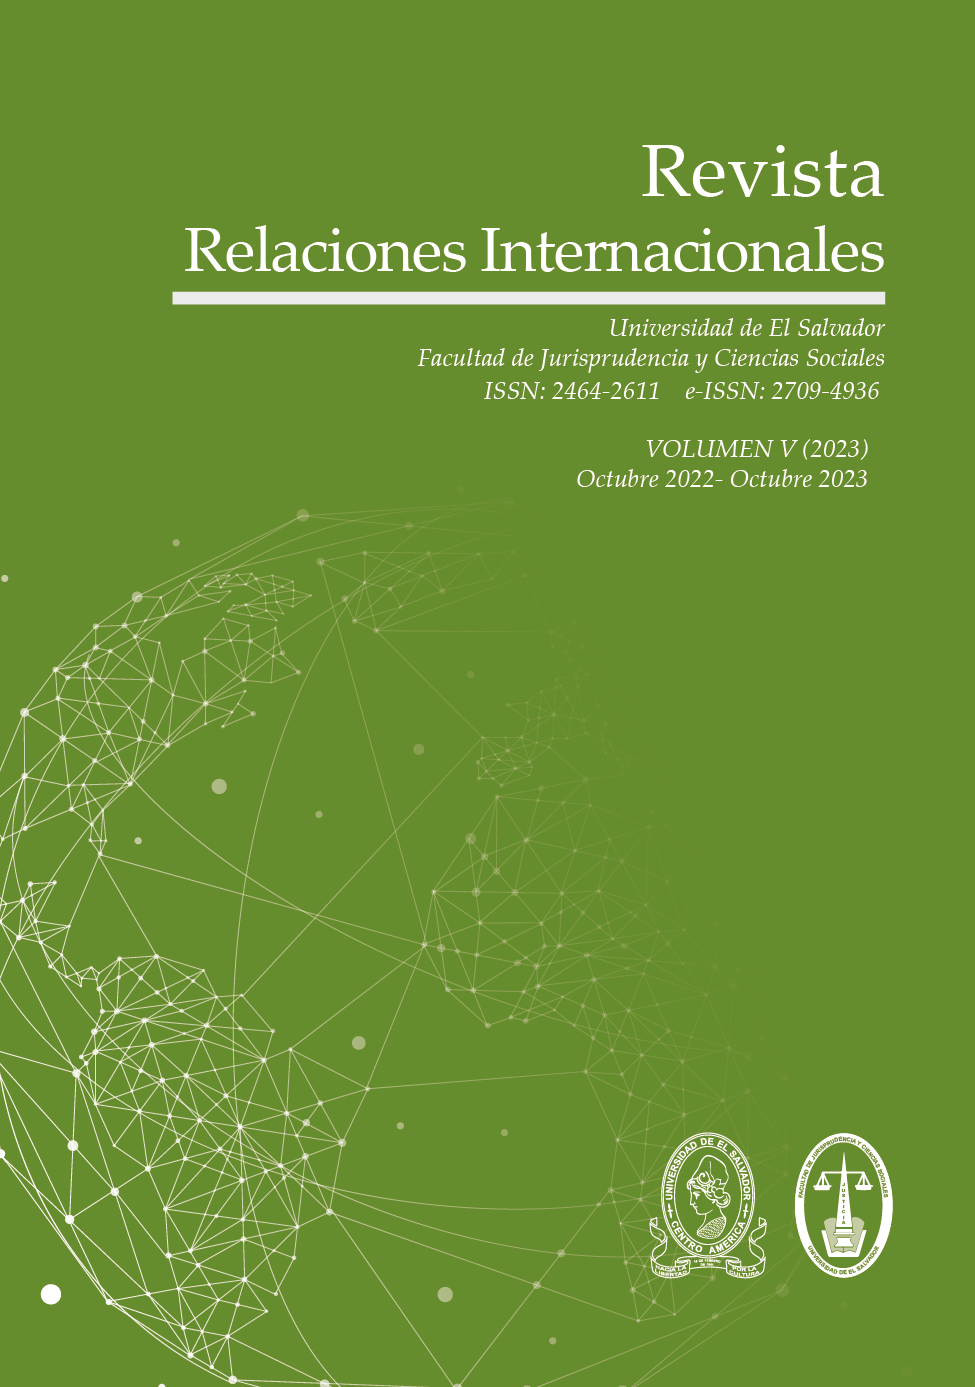 Revista Relaciones Internacionales Vol. 5 (2023)